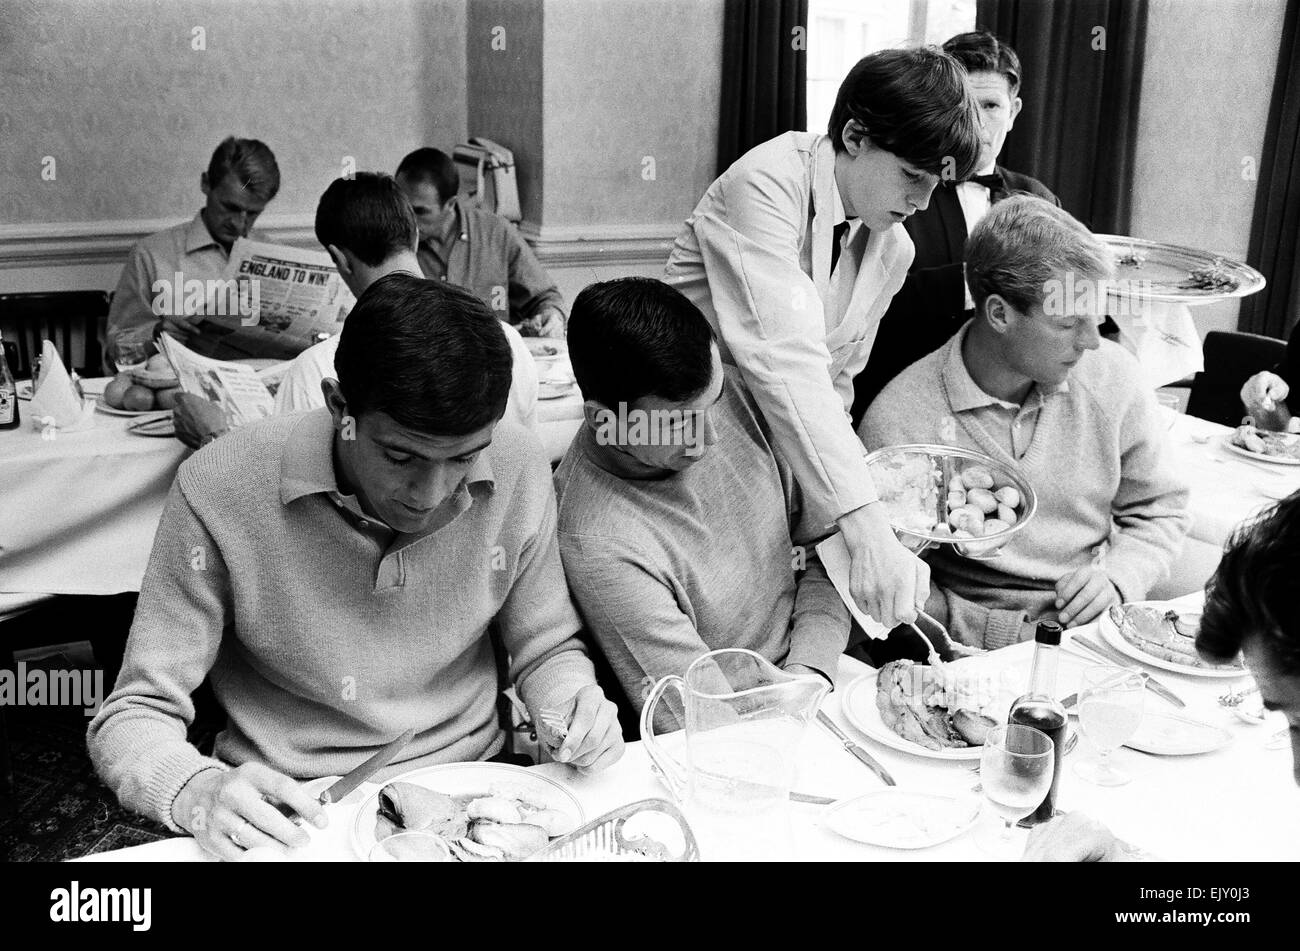 1966-Weltmeisterschaft England Mannschaft an ihrer Basis in Hendon, wo sie im Verlauf des Turniers blieben.  Die Spieler zu den Mahlzeiten. Beachten Sie die Zeitung im Hintergrund (links) mit der Überschrift "England zu gewinnen!"  Gordan Banks (Mitte) Stockfoto